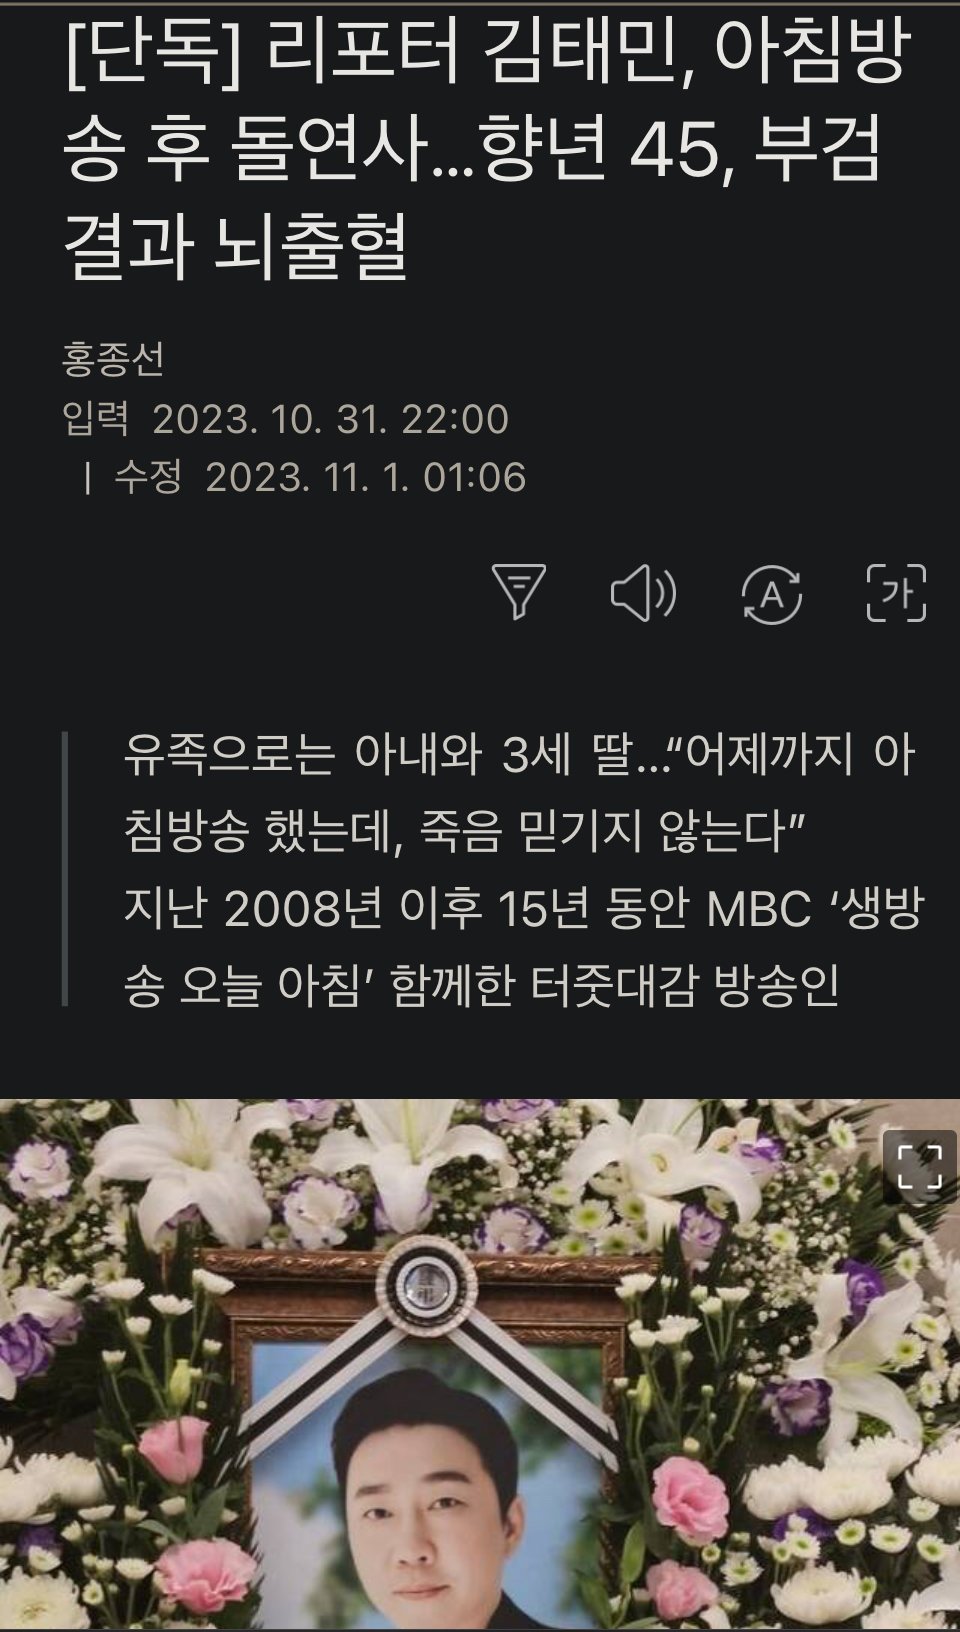 [단독] 리포터 김태민, 아침방송 후 돌연사…향년 45, 부검결과 뇌출혈